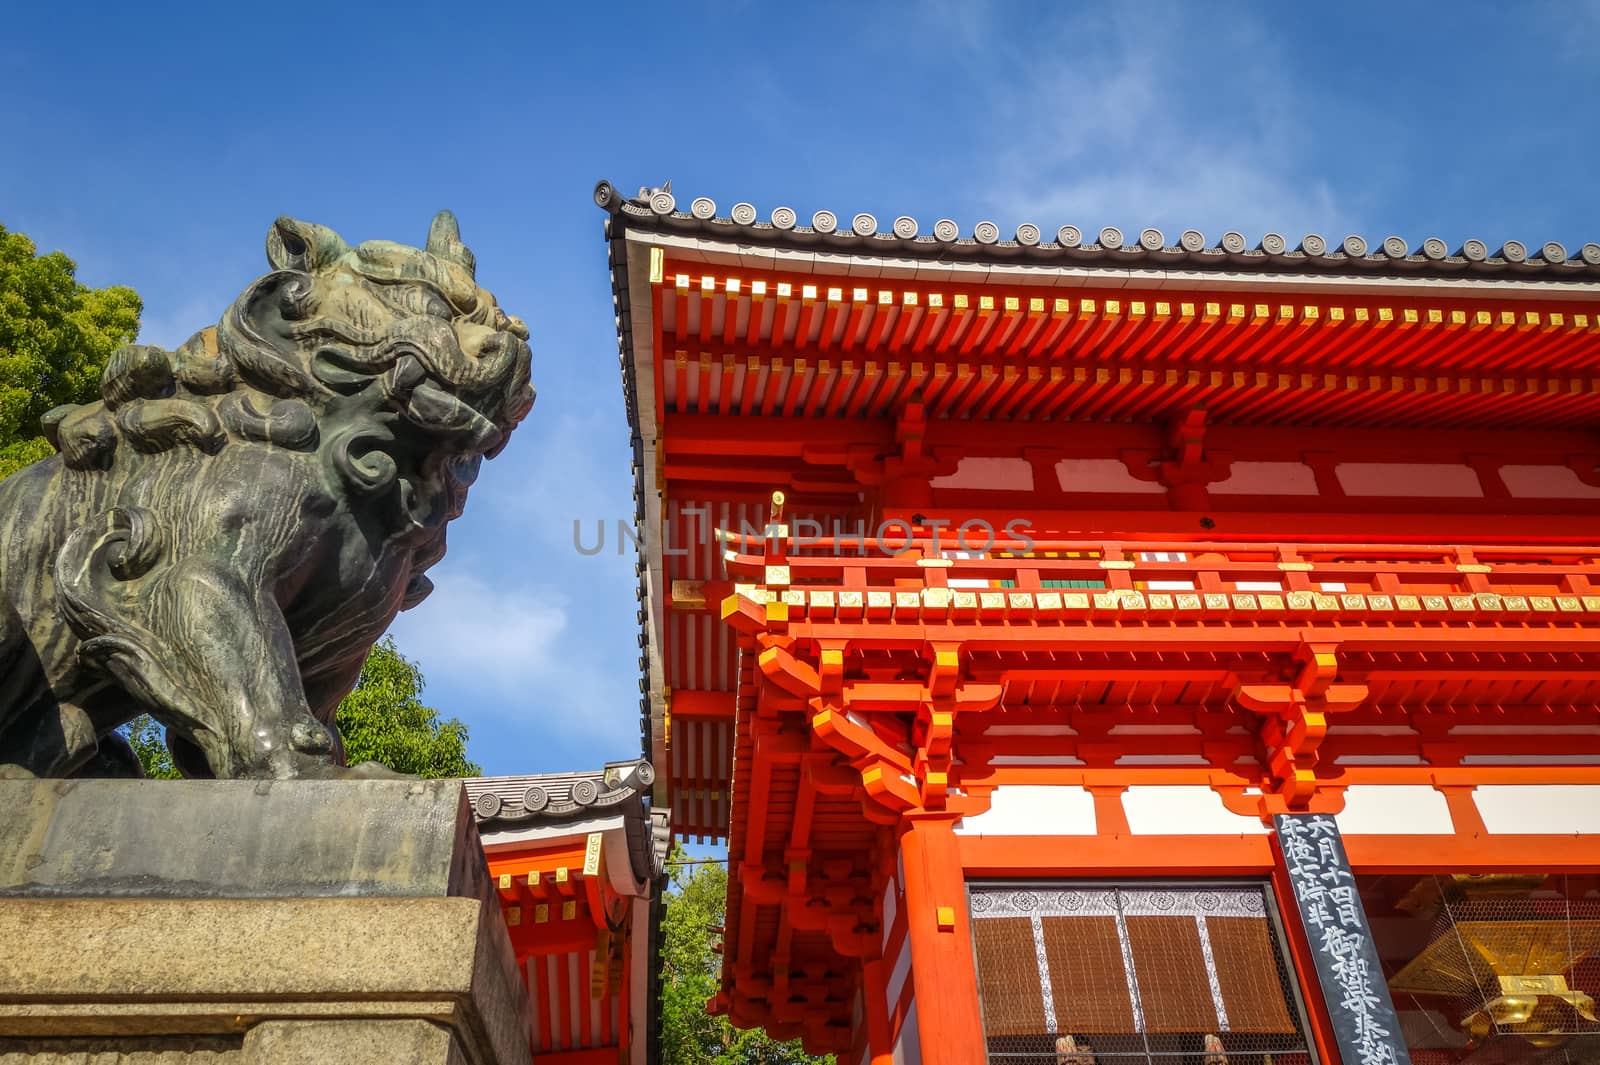 Lion statue at Yasaka-Jinja, Kyoto, Japan by daboost